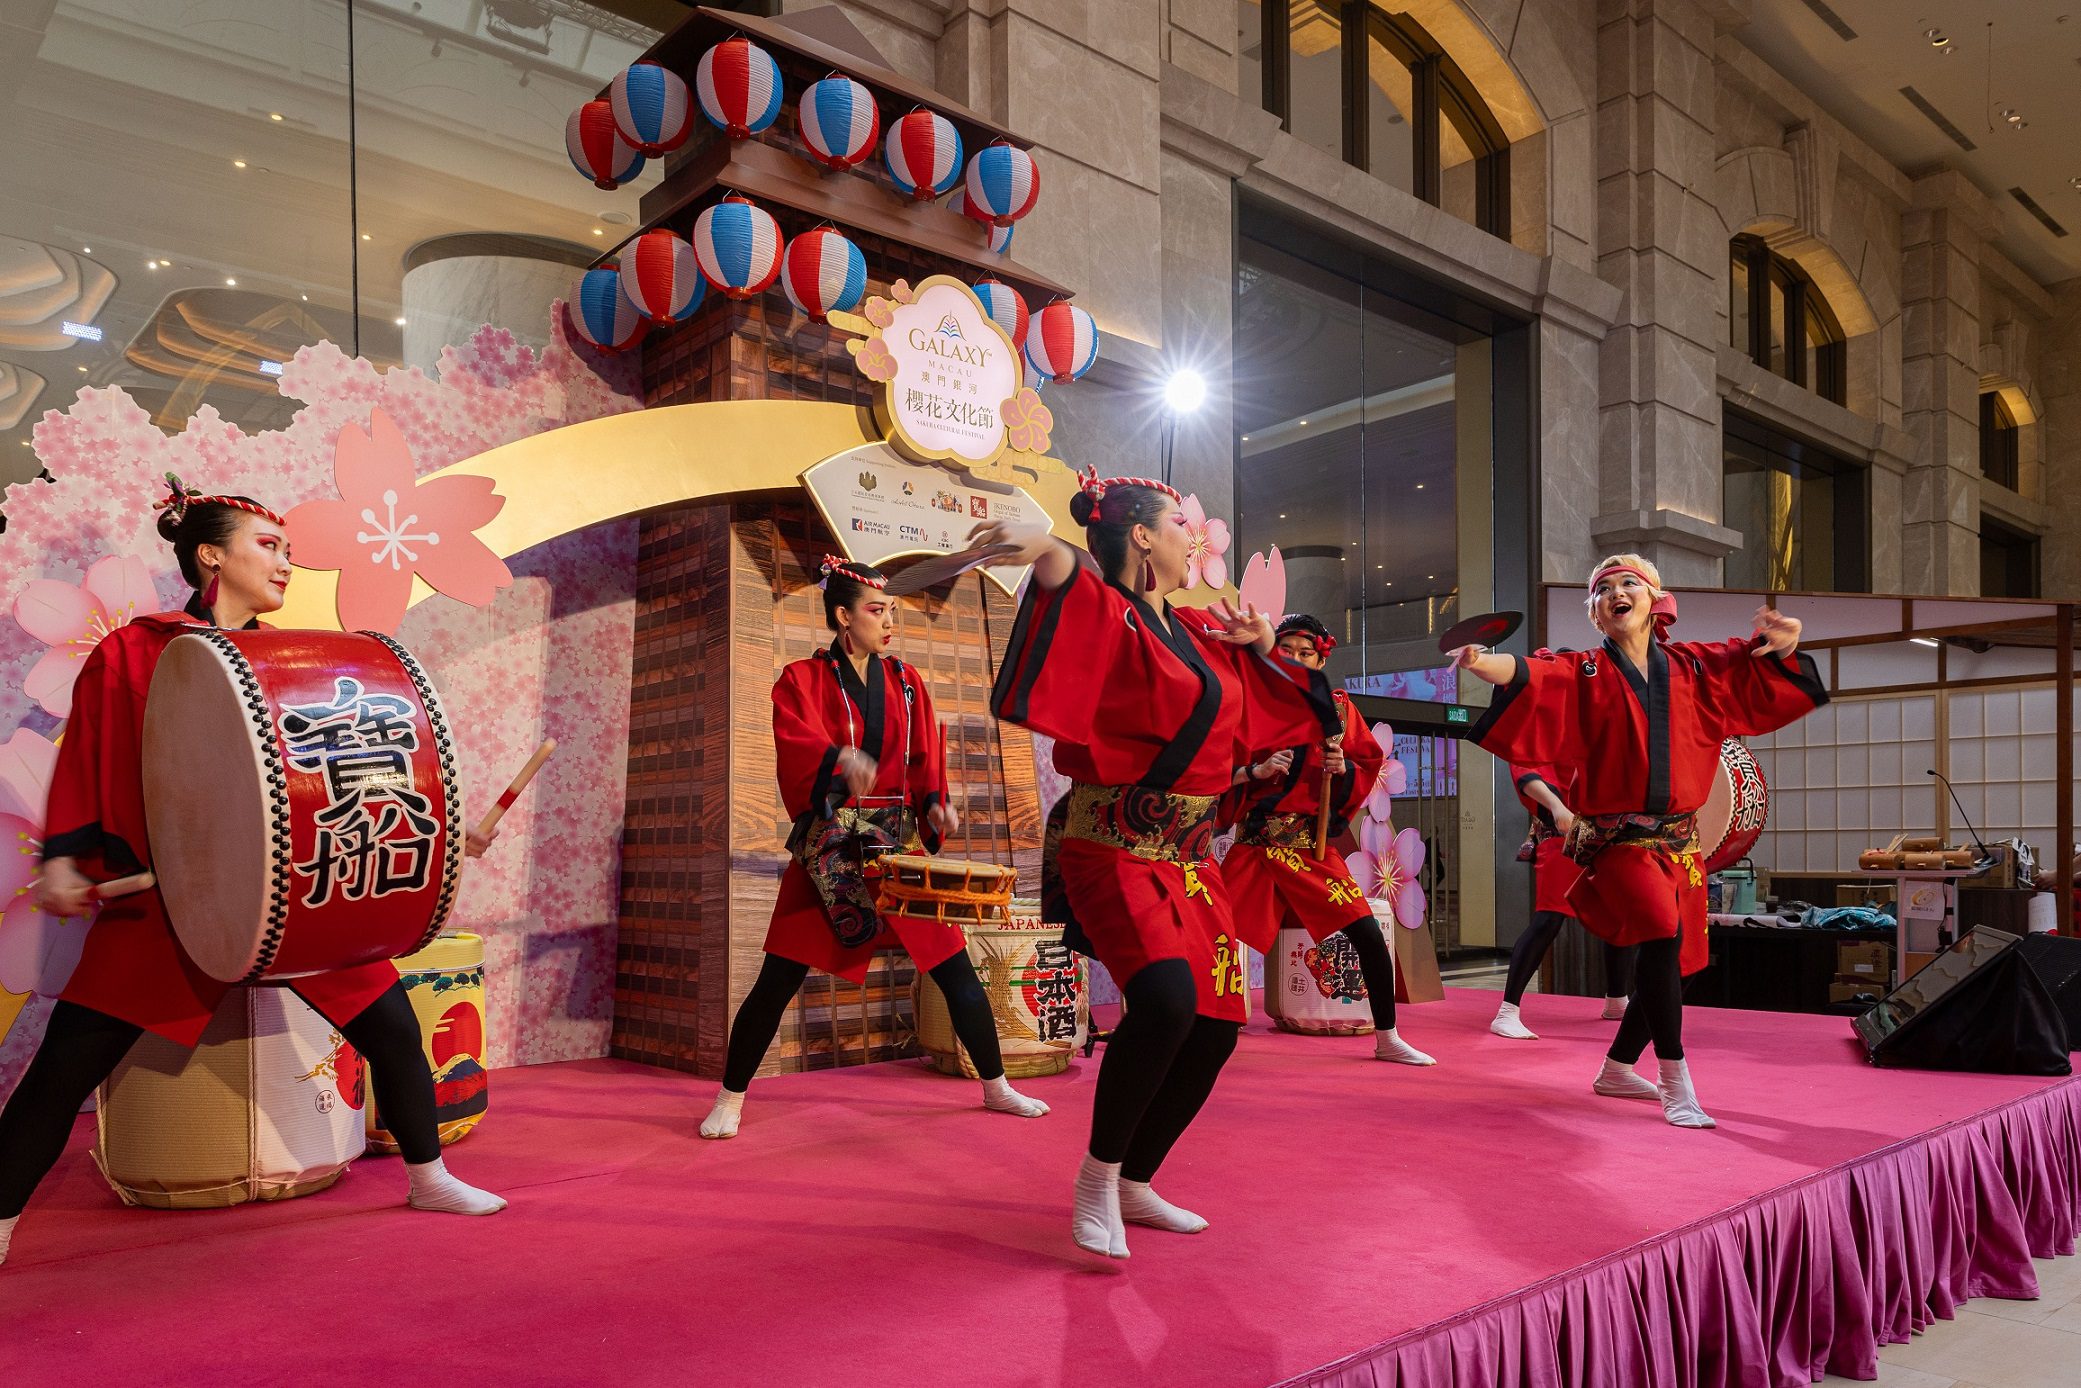 特邀自日本的表演團體「寶船」在「澳門銀河」櫻花文化節期間每天為賓客奉上精彩的日本傳統太鼓表演。